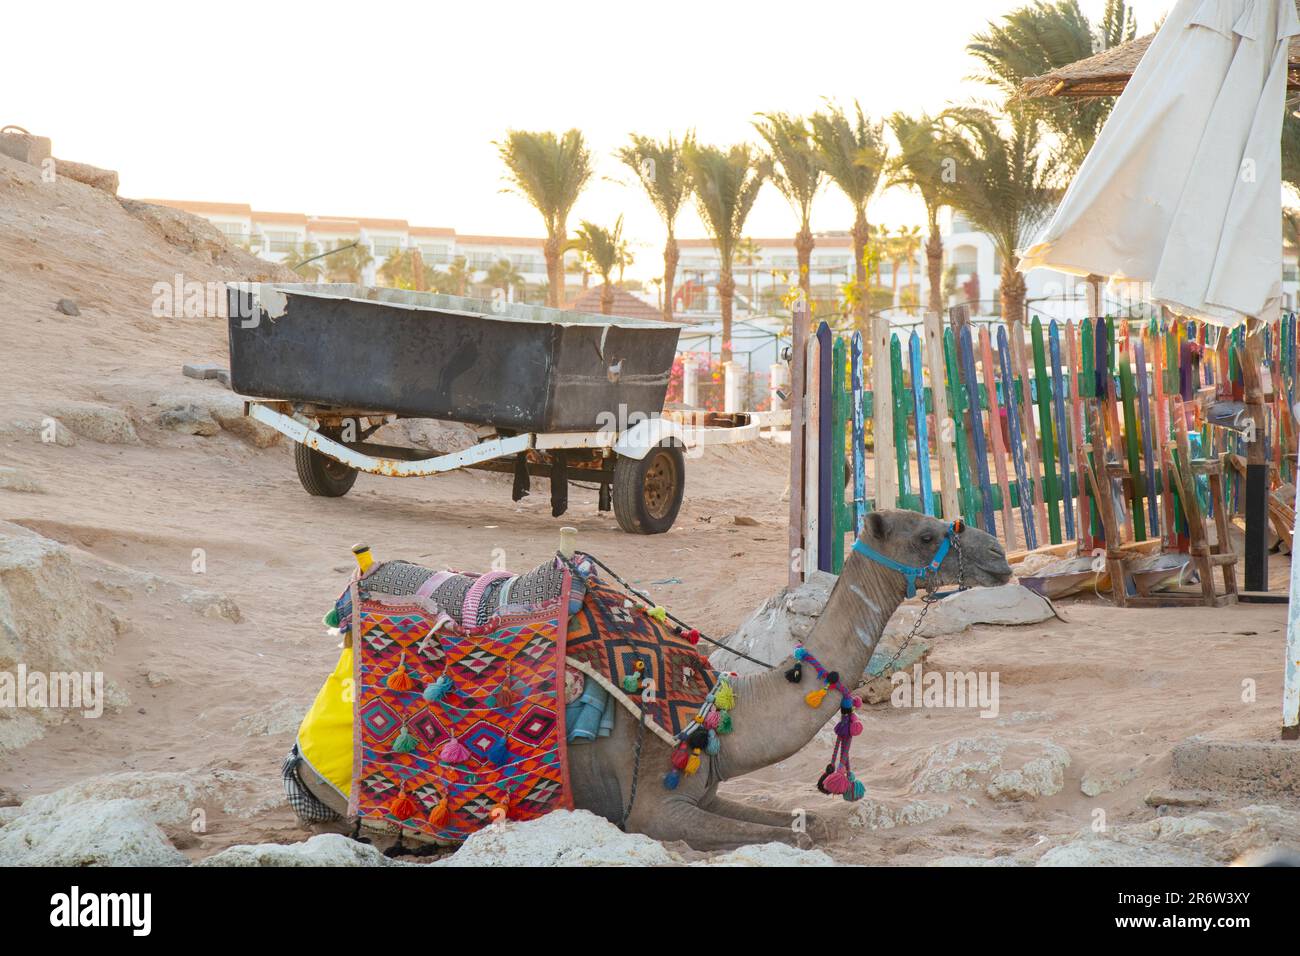 un chameau se trouve sur le sable d'une plage Banque D'Images